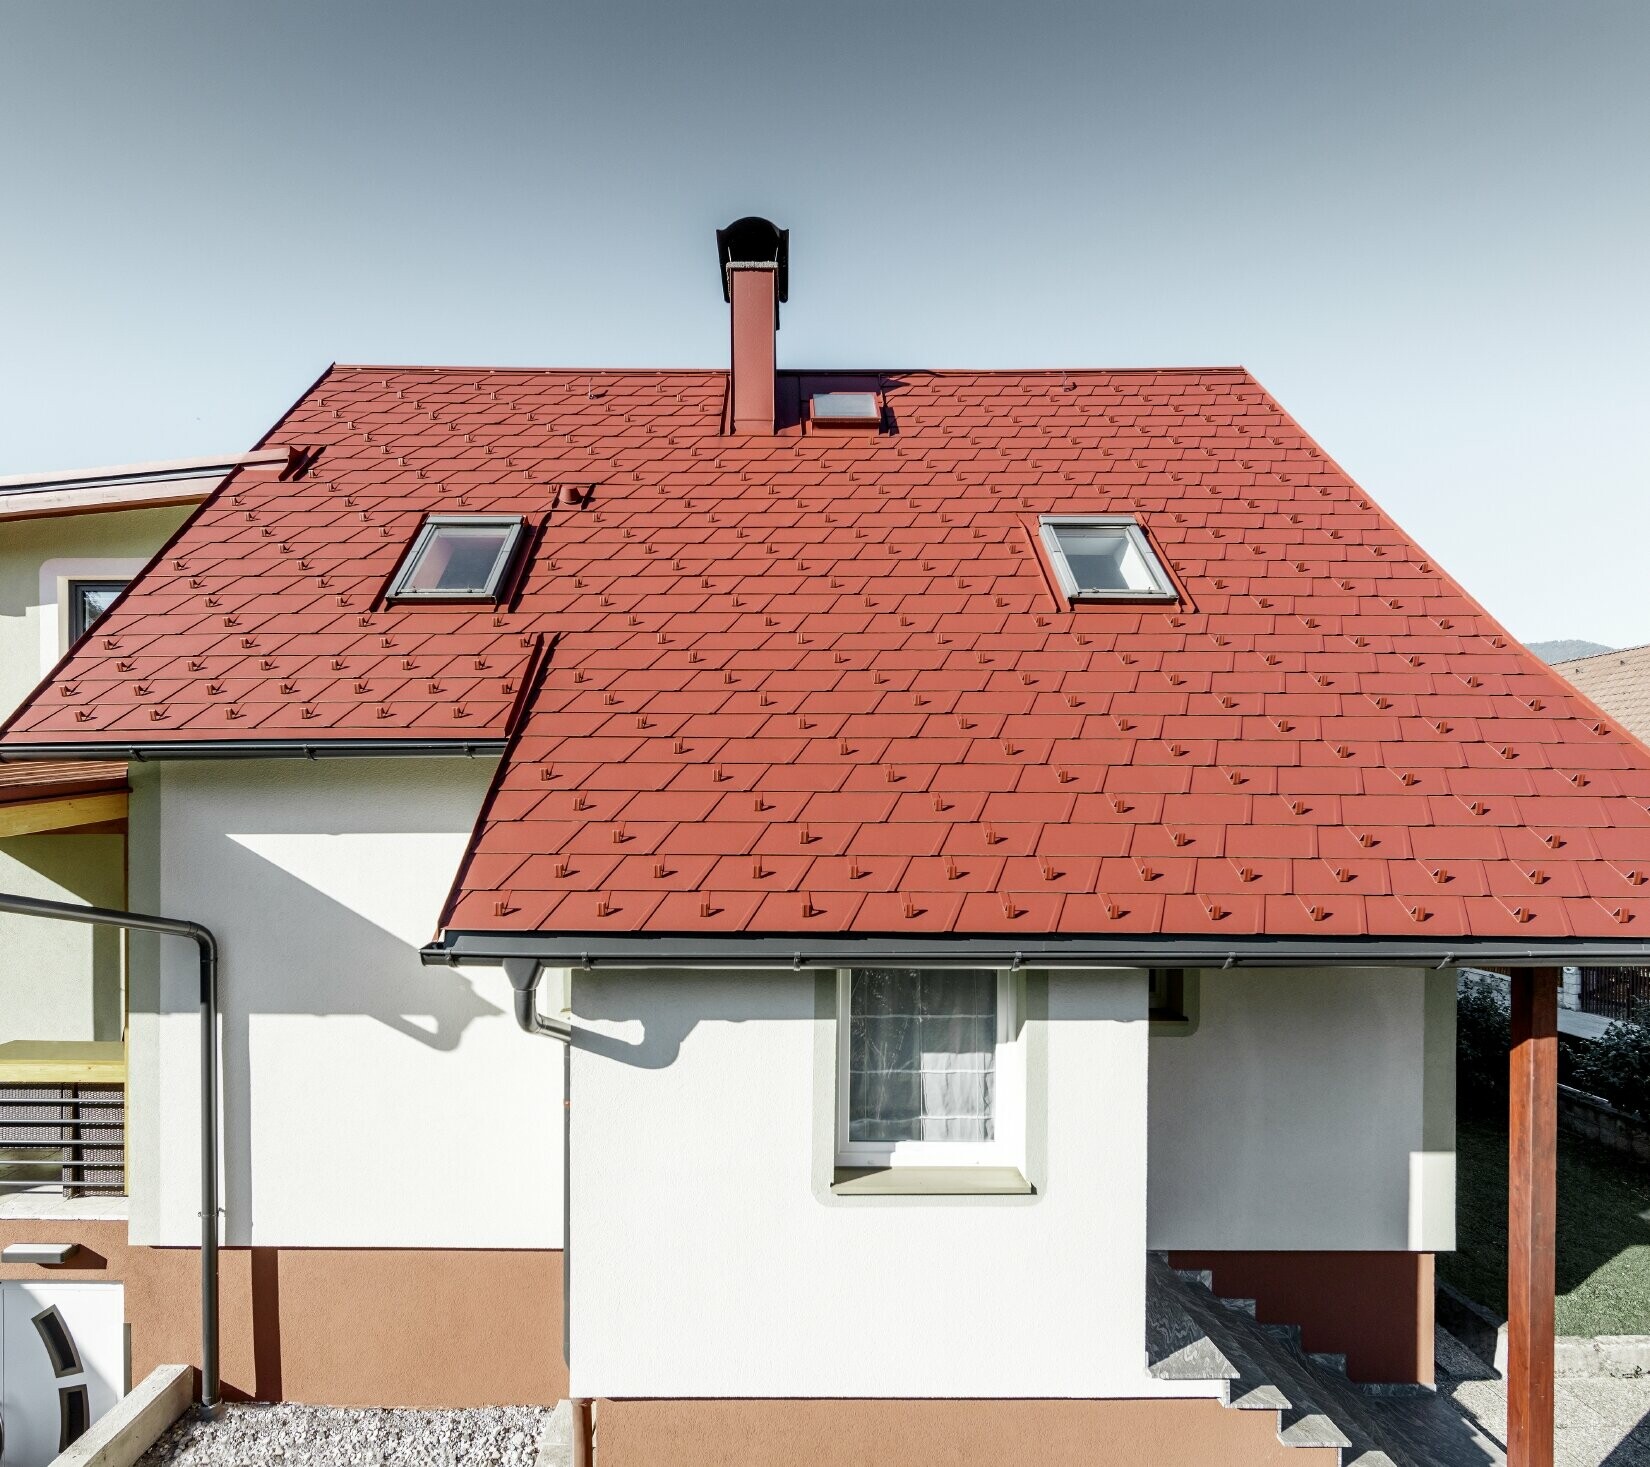 Renoveret enfamilieshus med nyt PREFA-tagspåntag belagt med DS.19 i farven oxidrød.